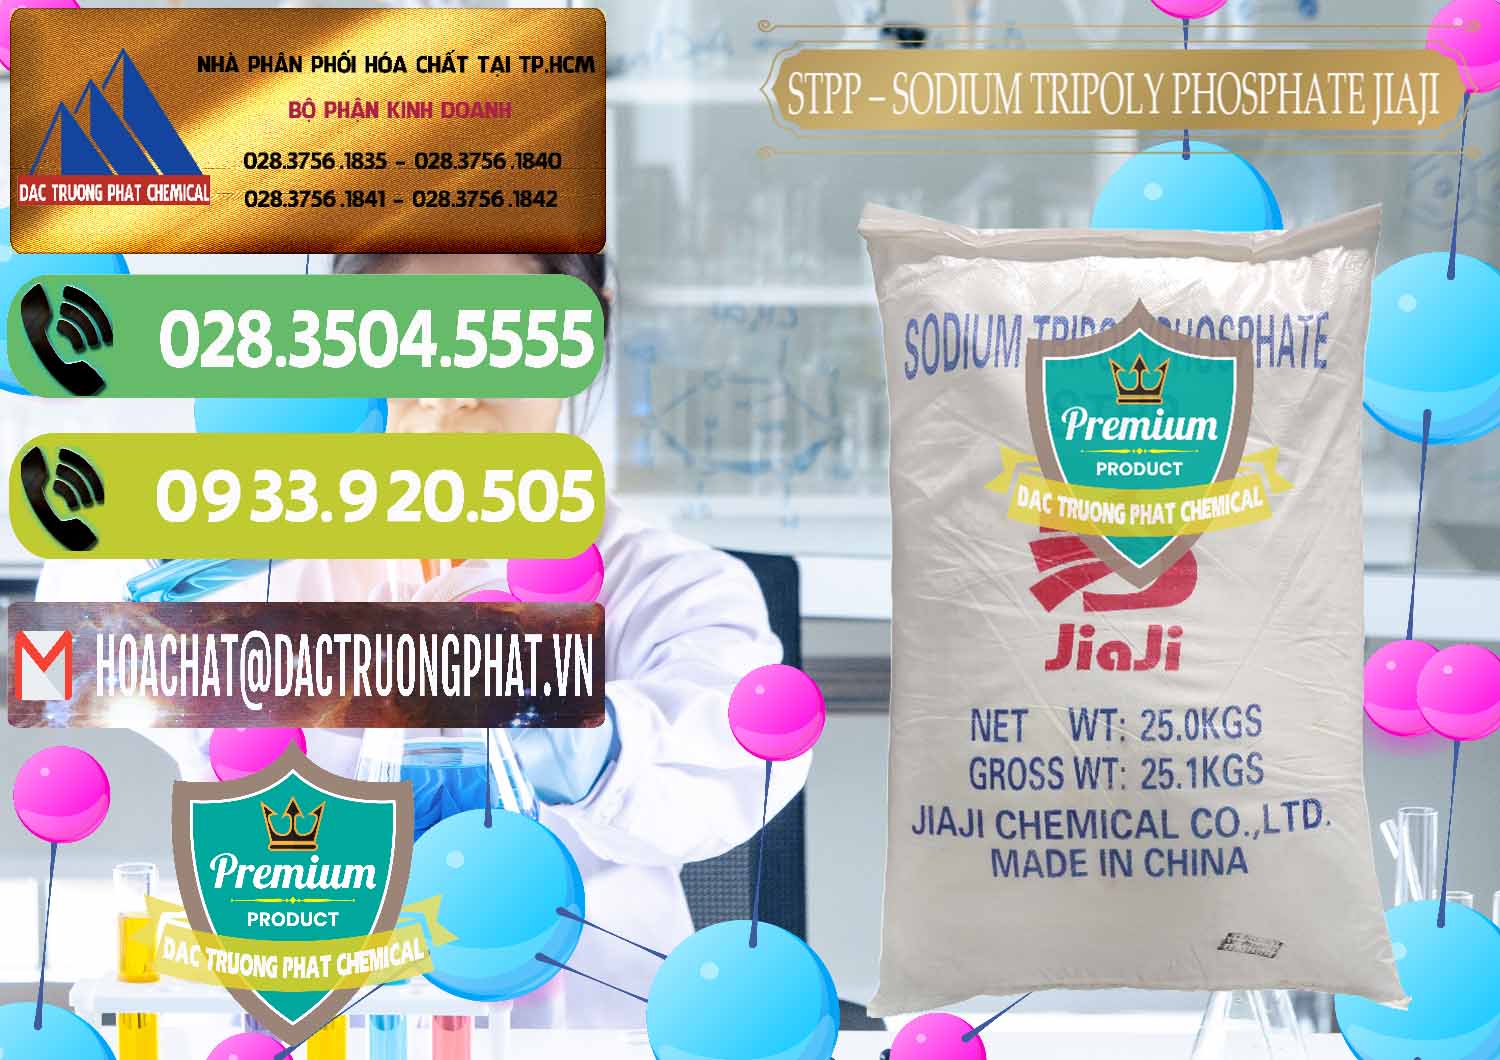 Đơn vị bán & cung cấp Sodium Tripoly Phosphate - STPP Jiaji Trung Quốc China - 0154 - Đơn vị chuyên phân phối và bán hóa chất tại TP.HCM - hoachatmientay.vn